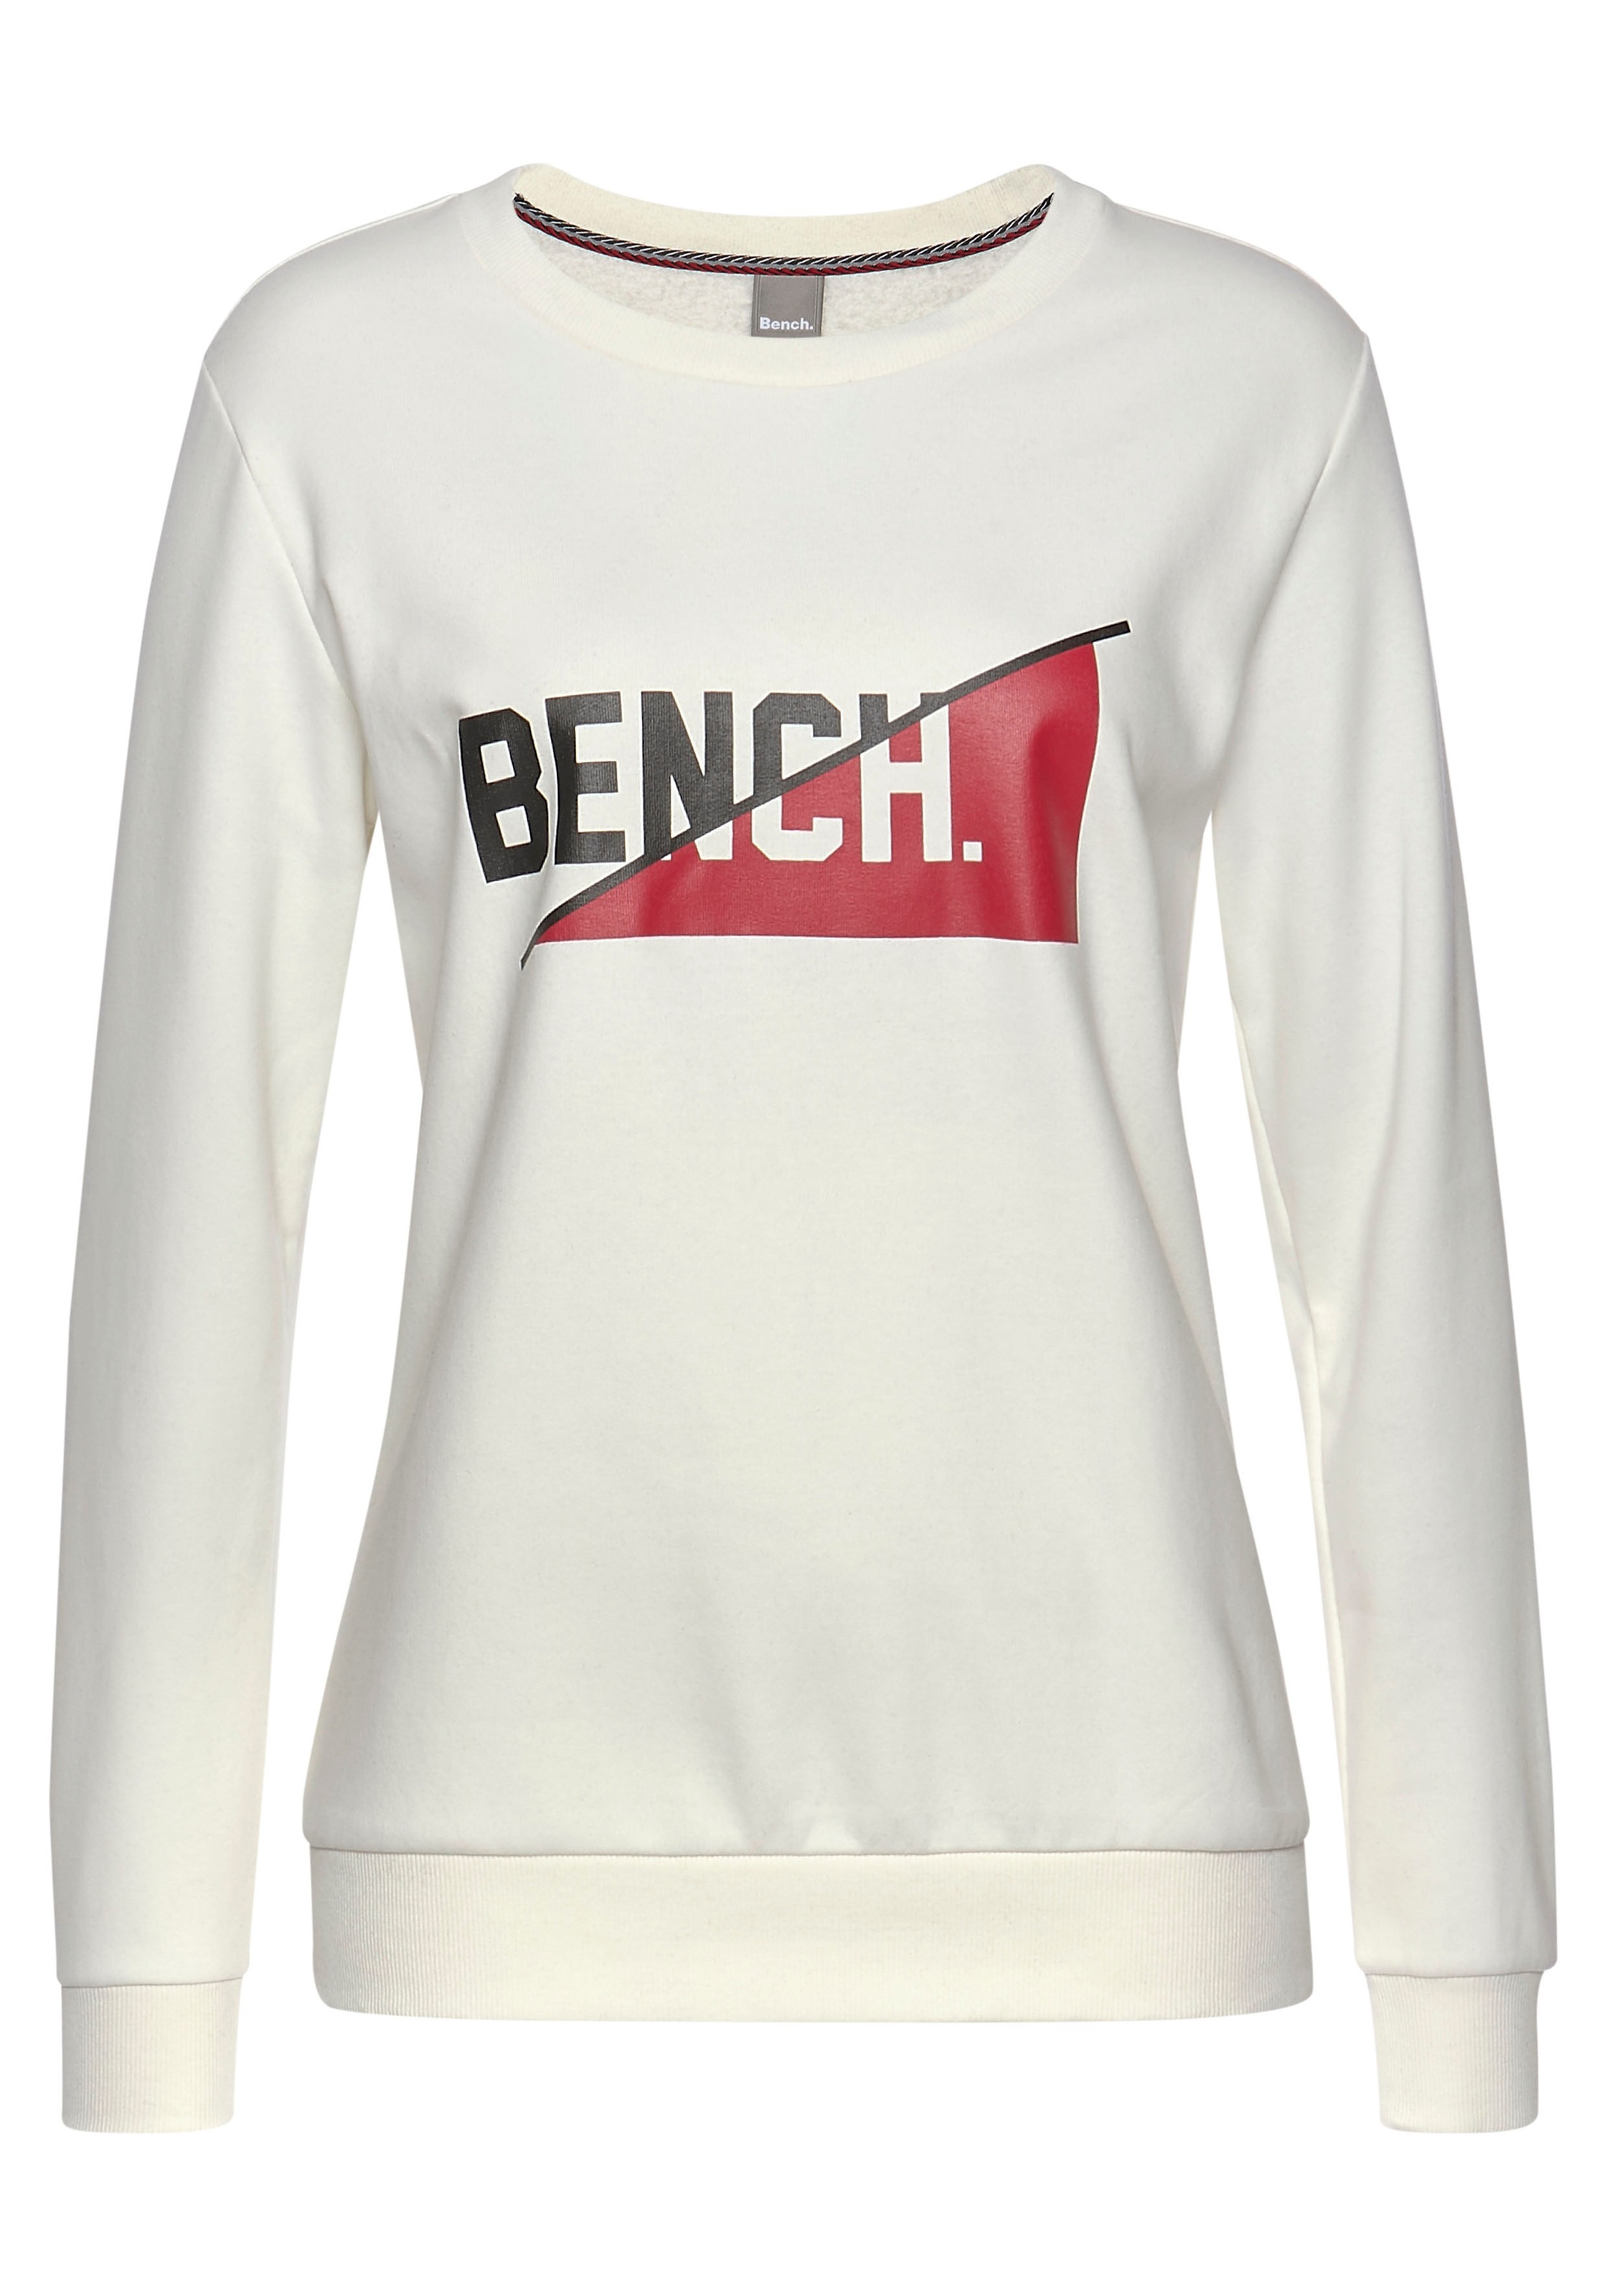 Bench. Sweatshirt, Logodruck, Lingerie LASCANA kaufen » frontalem | Bademode, mit Unterwäsche online Loungeanzug 